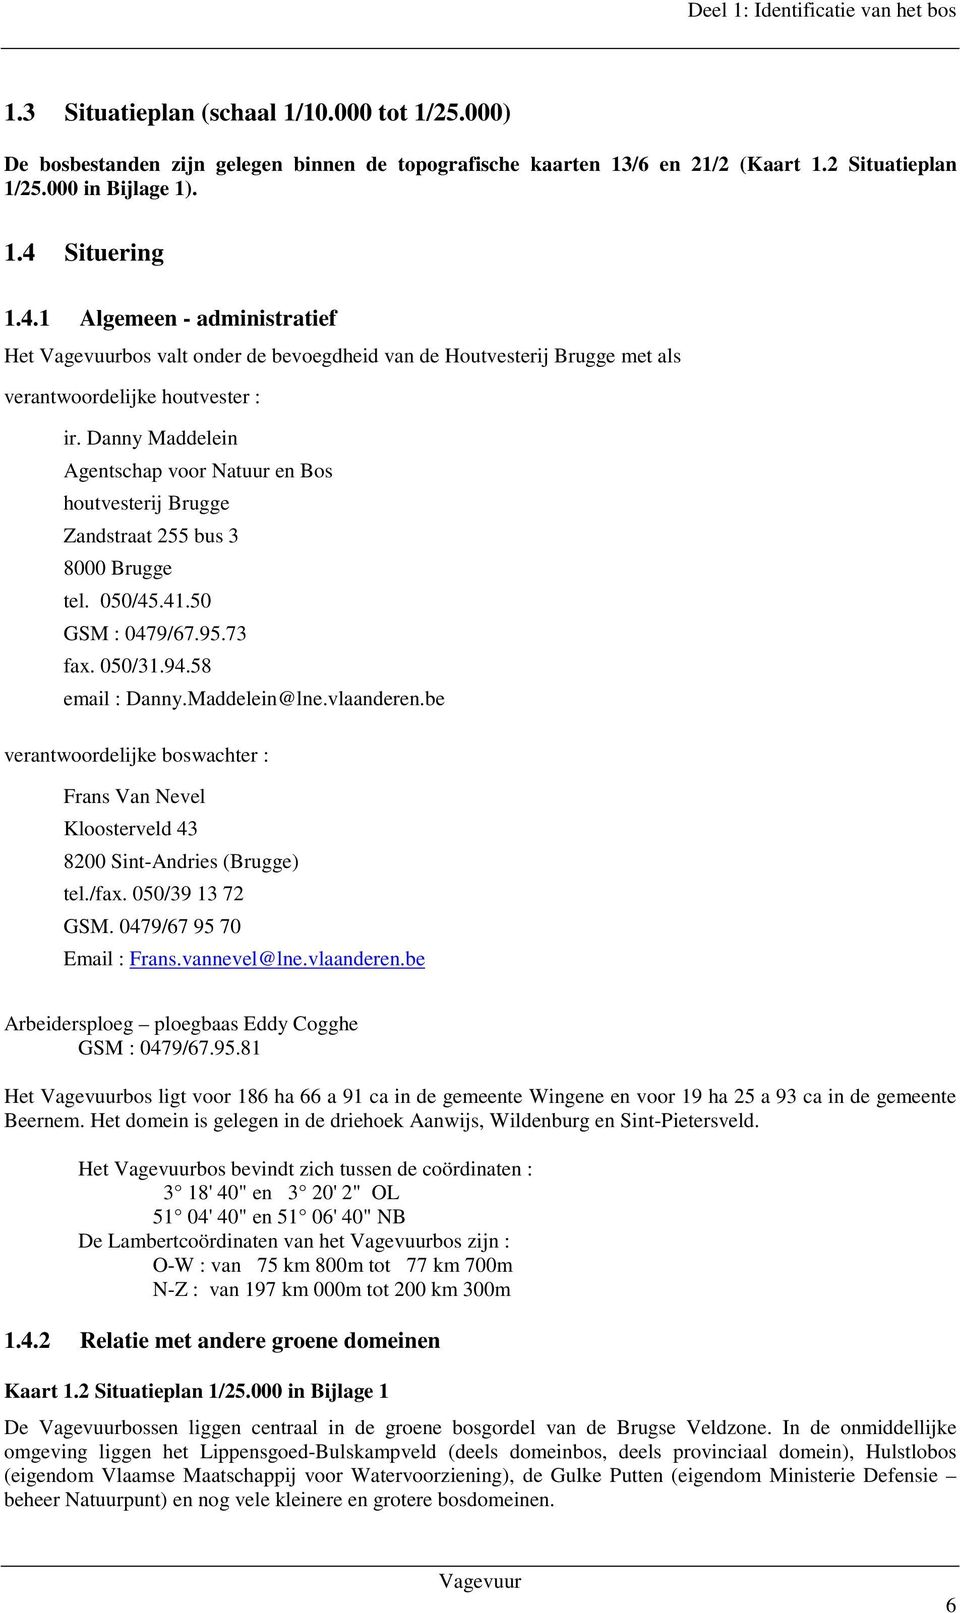 Danny Maddelein Agentschap voor Natuur en Bos houtvesterij Brugge Zandstraat 255 bus 3 8000 Brugge tel. 050/45.41.50 GSM : 0479/67.95.73 fax. 050/31.94.58 email : Danny.Maddelein@lne.vlaanderen.